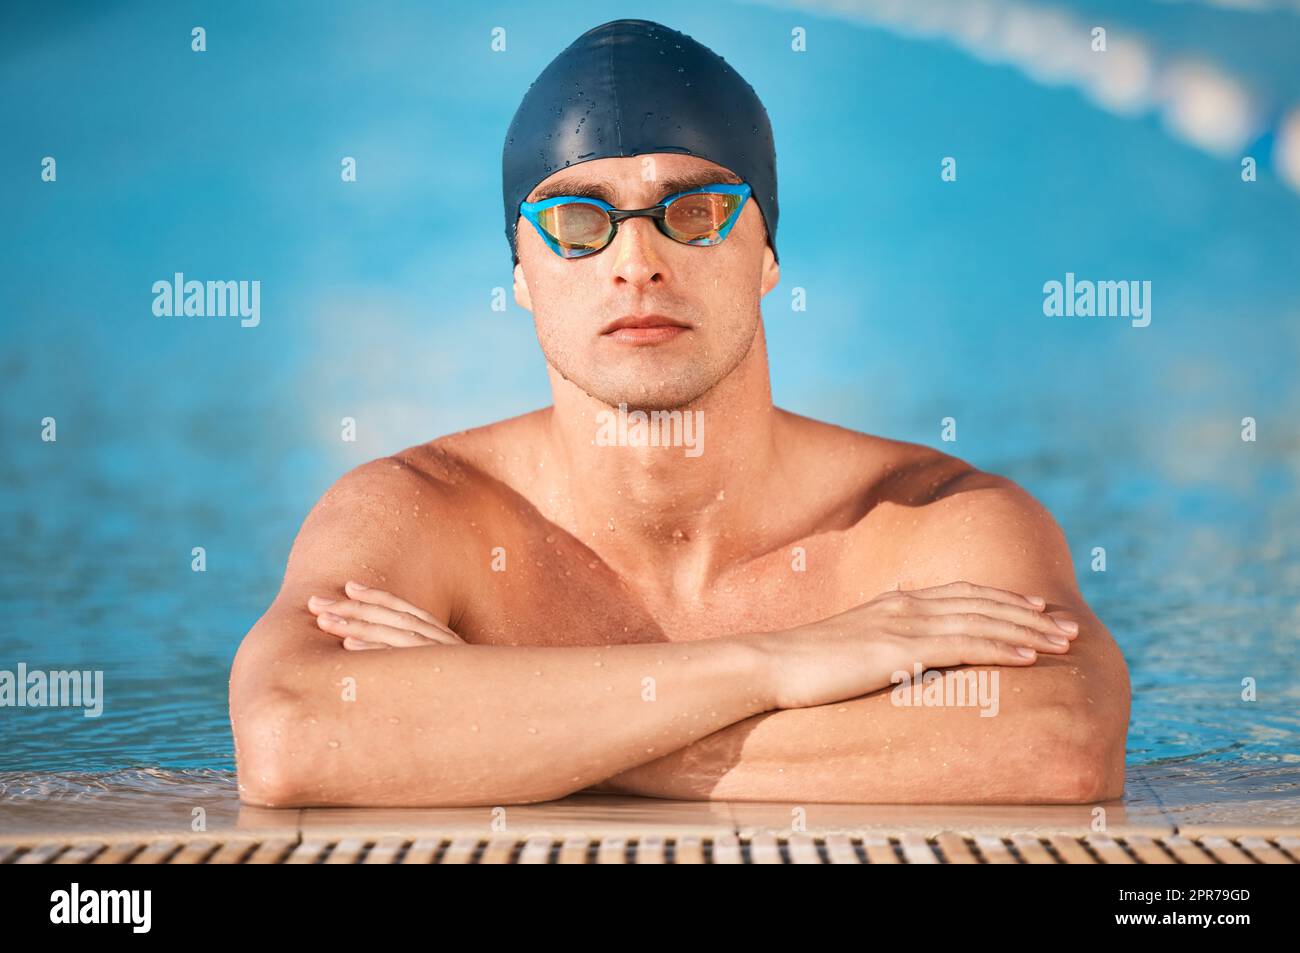 Imposta i tuoi obiettivi e poi distruggi i tuoi obiettivi. Un bel giovane atleta maschile che nuota in una piscina olimpionica. Foto Stock